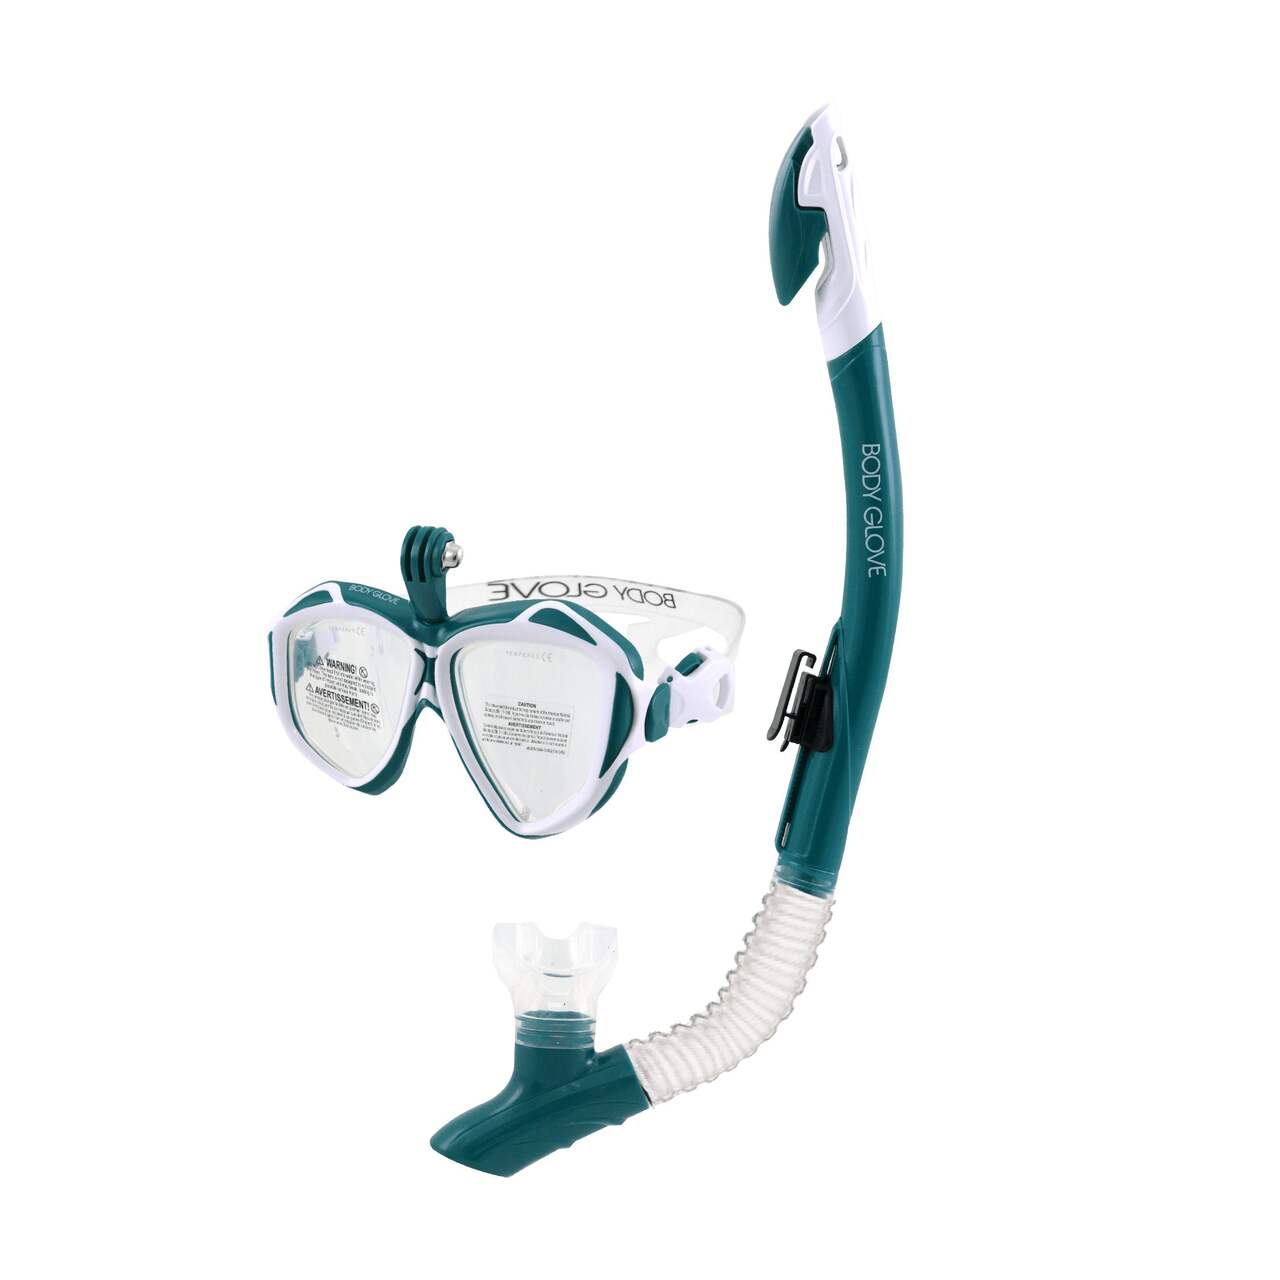 Masque de plongée pour GoPro